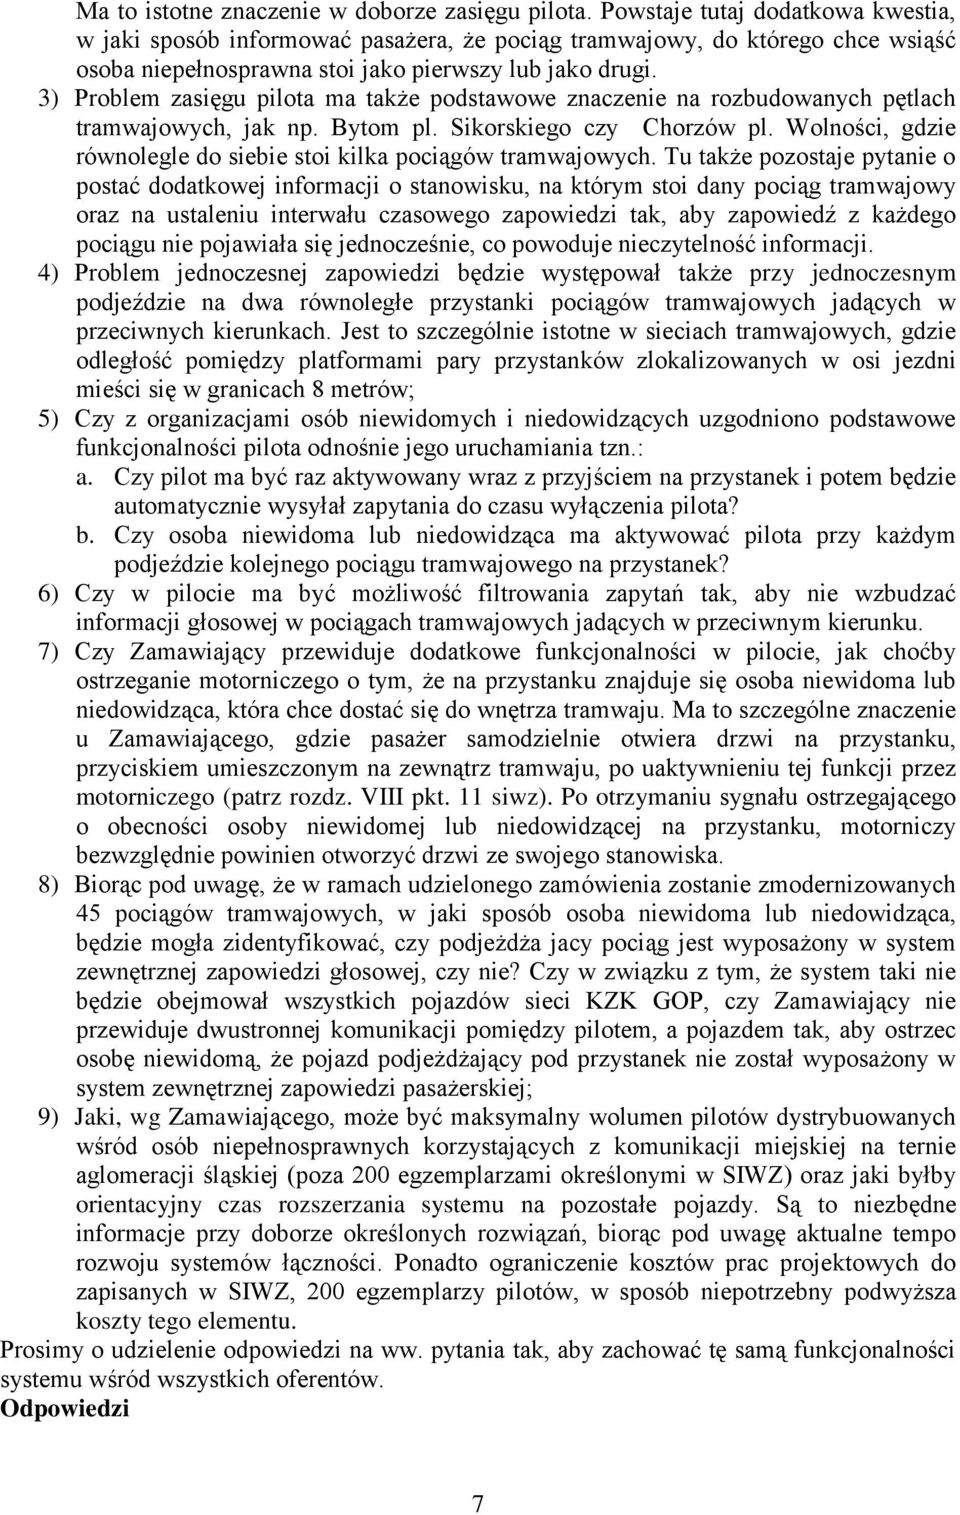 3) Problem zasięgu pilota ma także podstawowe znaczenie na rozbudowanych pętlach tramwajowych, jak np. Bytom pl. Sikorskiego czy Chorzów pl.